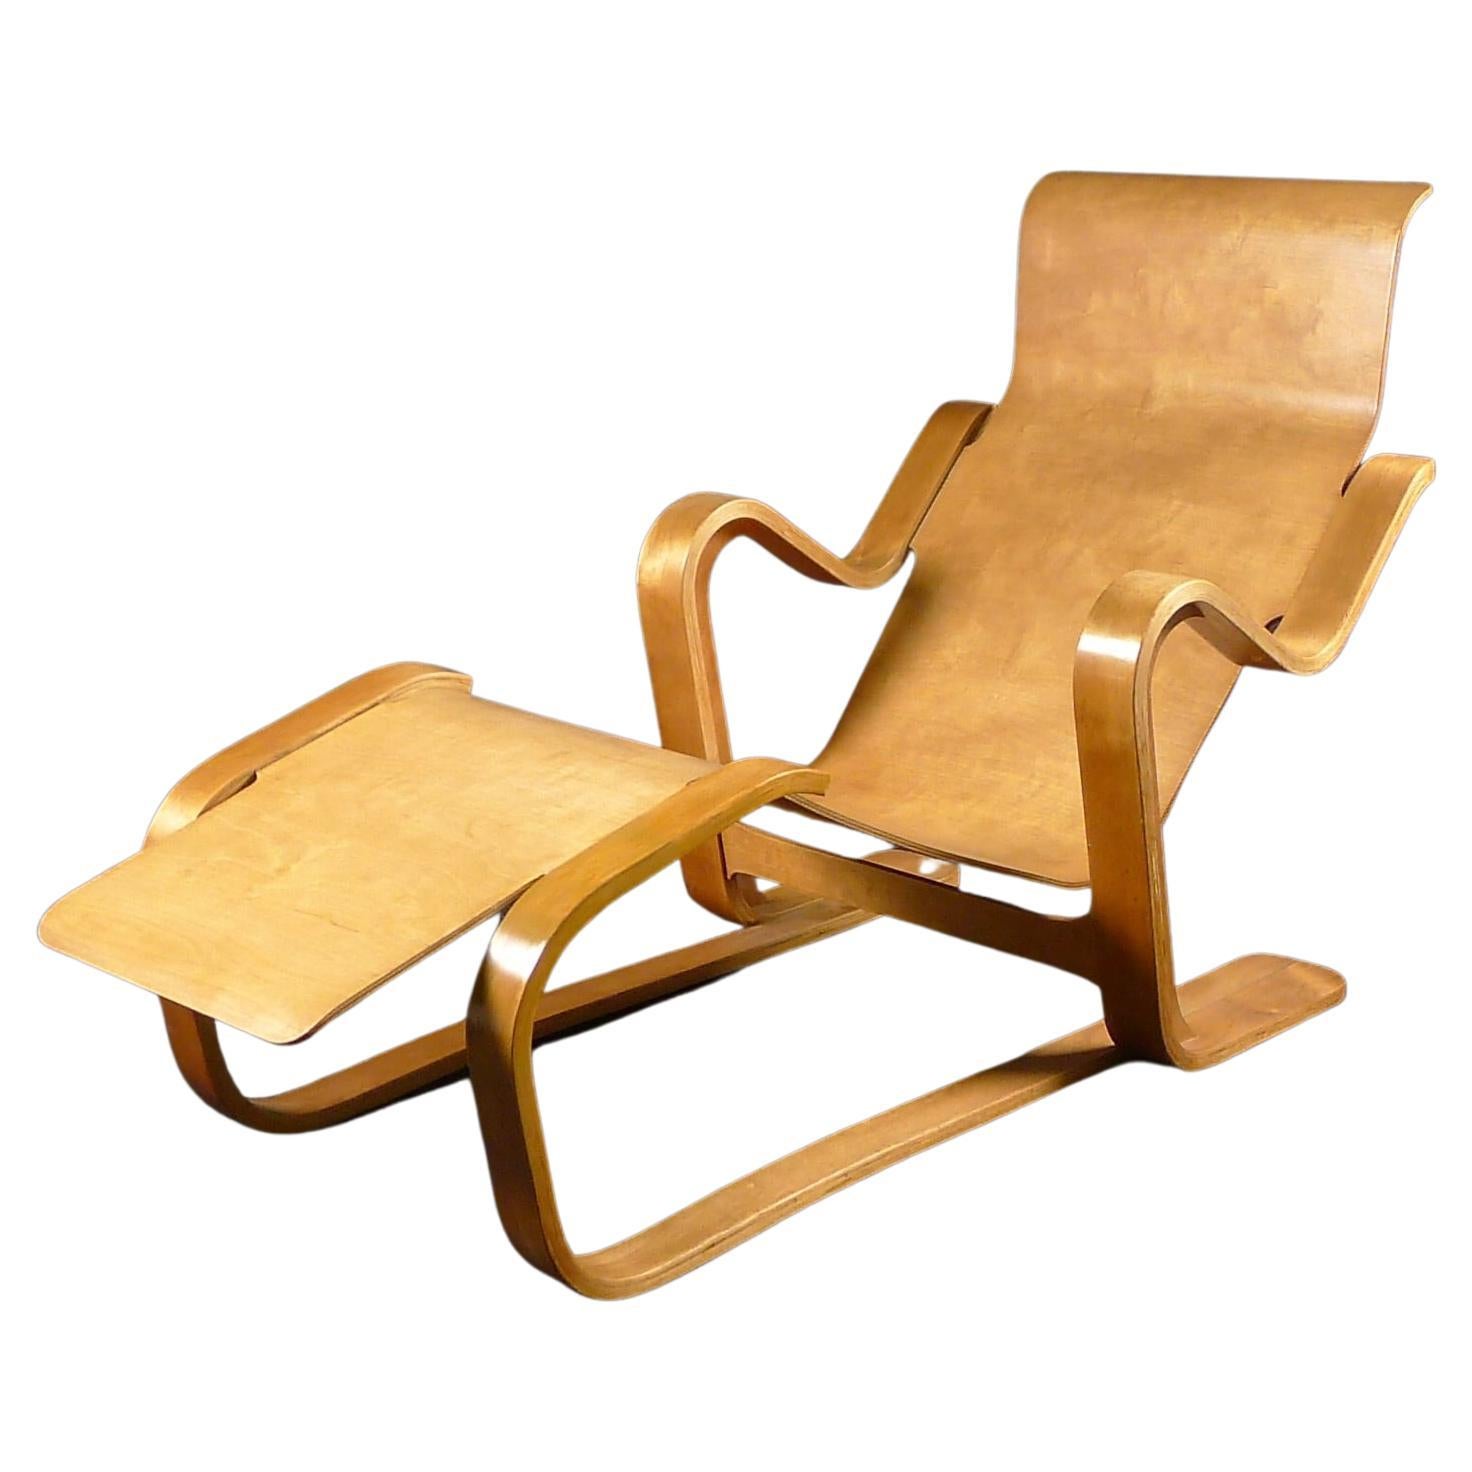 Chaise longue Marcel Breuer, contreplaqué de bouleau, Isokon Furniture Ltd, conçue en 1935